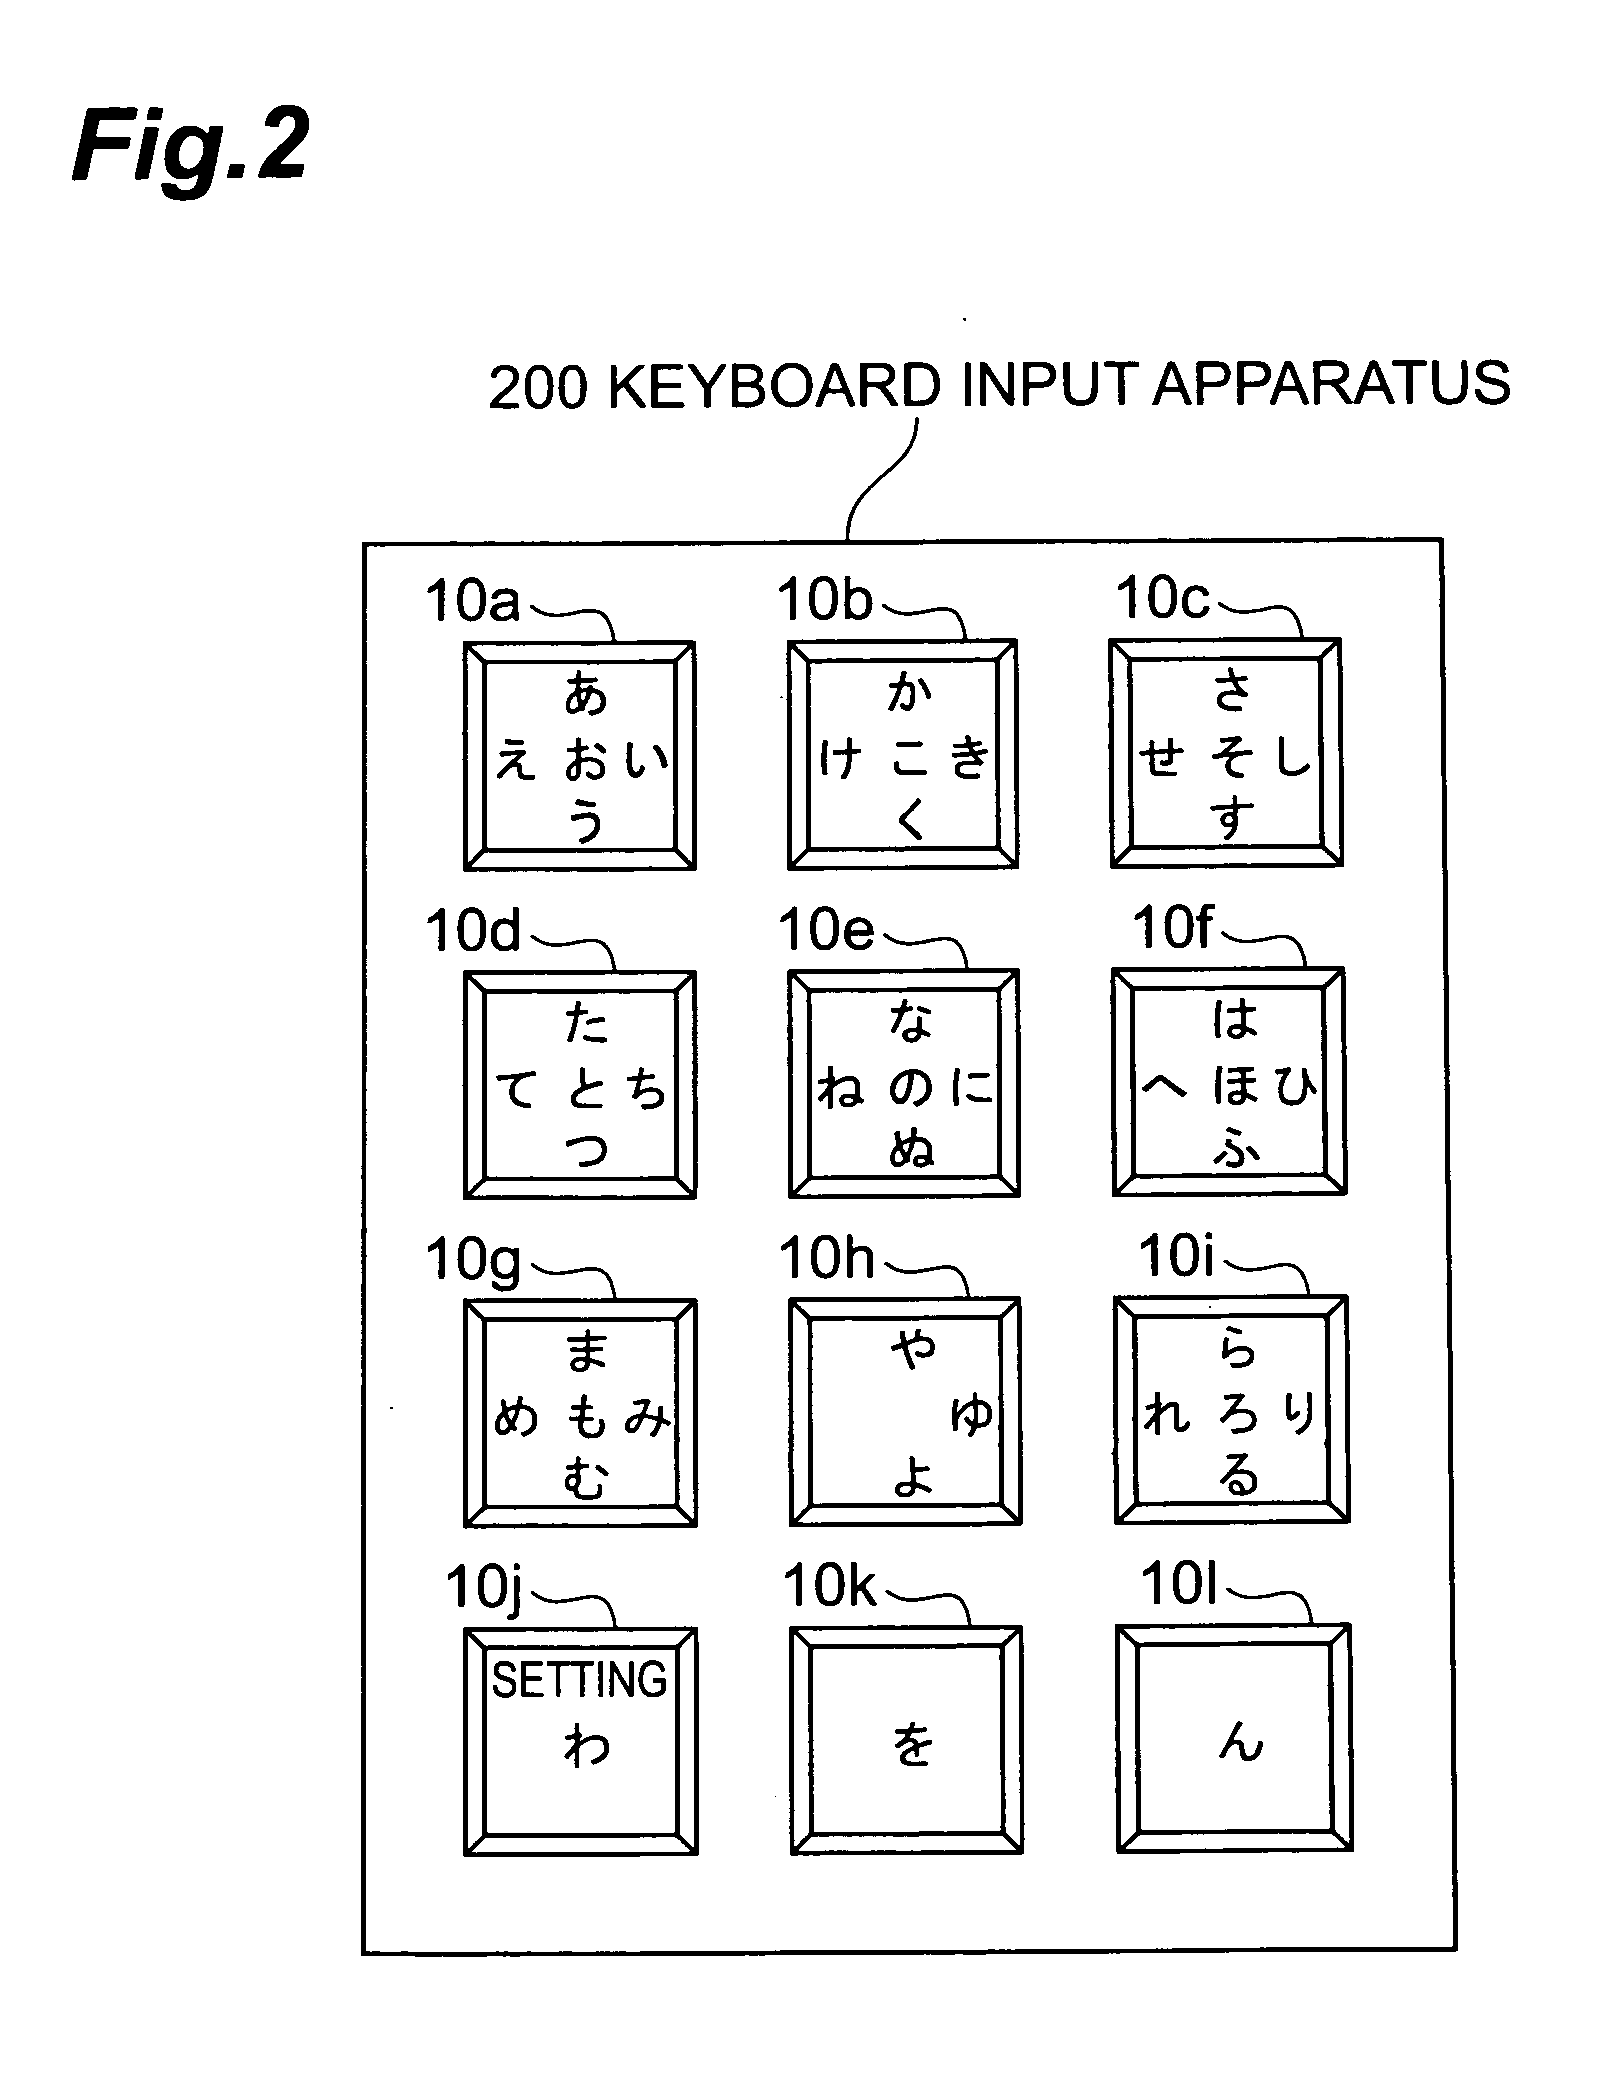 Input key and input apparatus